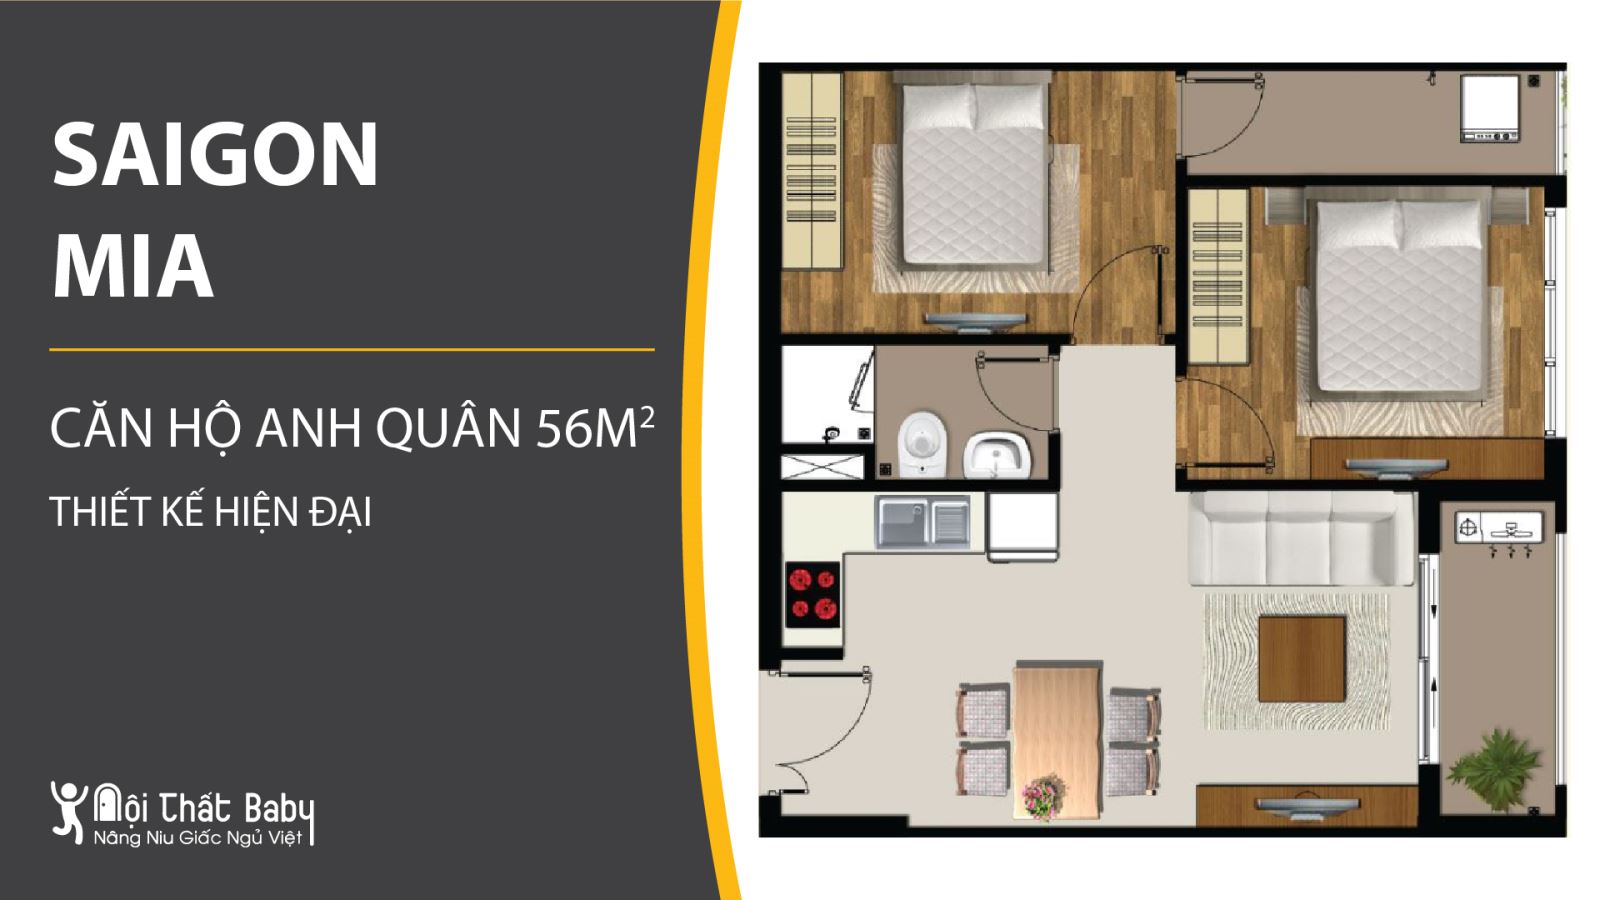 Tổng hợp các mẫu thiết kế nội thất chung cư Saigon Mia